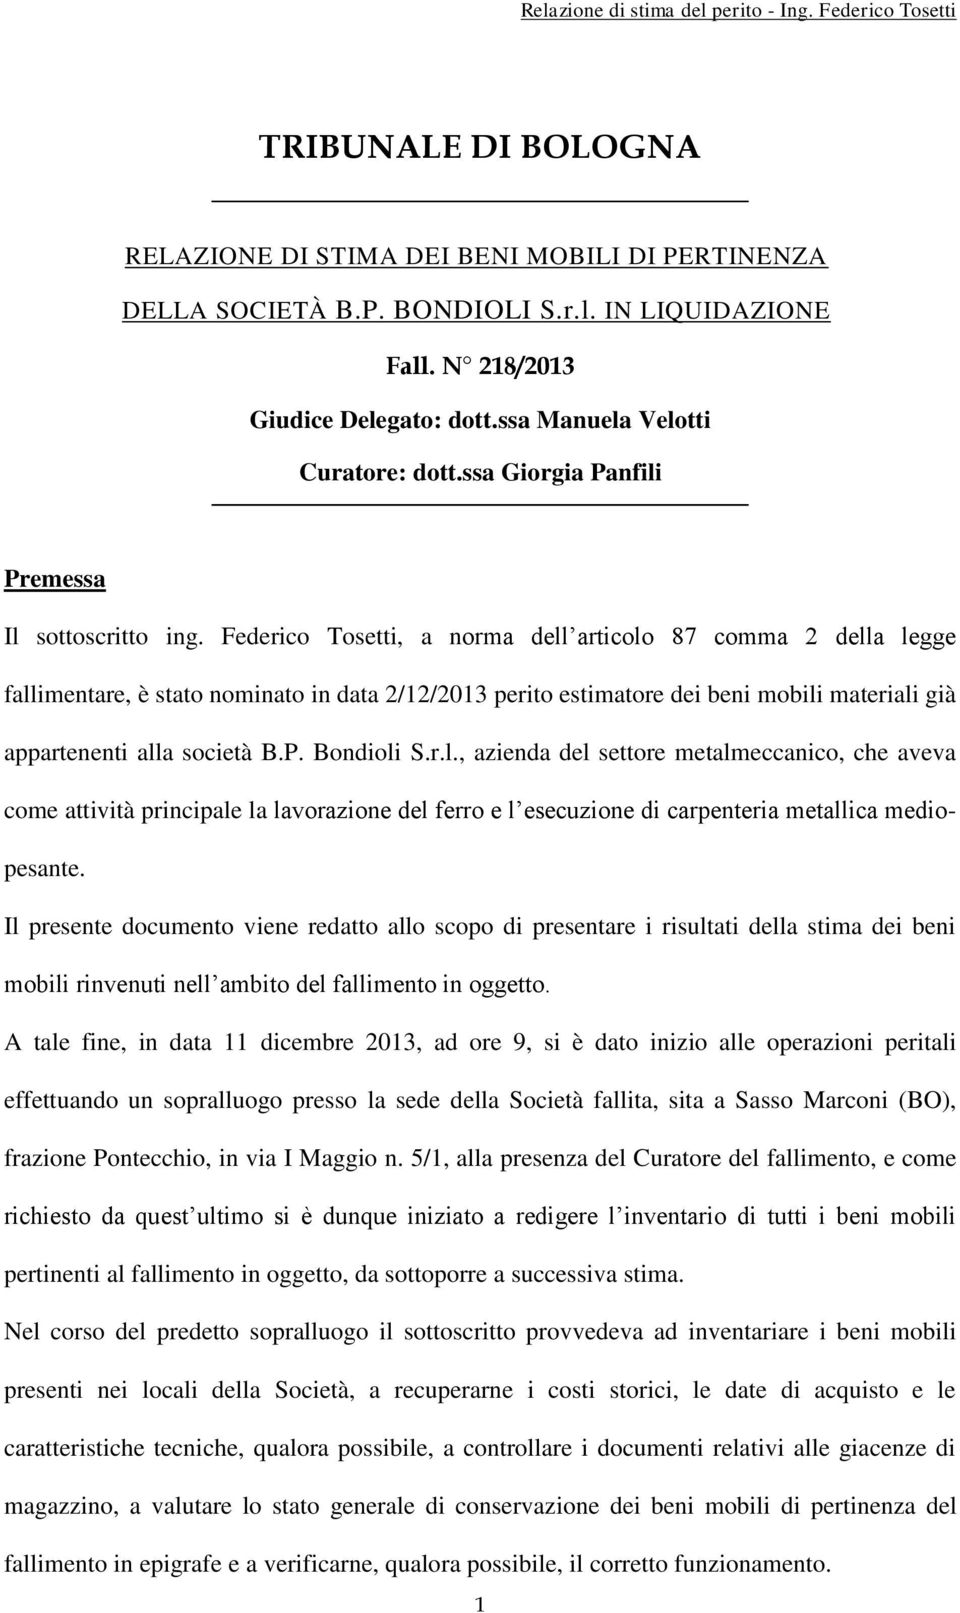 Federico Tosetti, a norma dell articolo 87 comma 2 della legge fallimentare, è stato nominato in data 2/12/2013 perito estimatore dei beni mobili materiali già appartenenti alla società B.P.